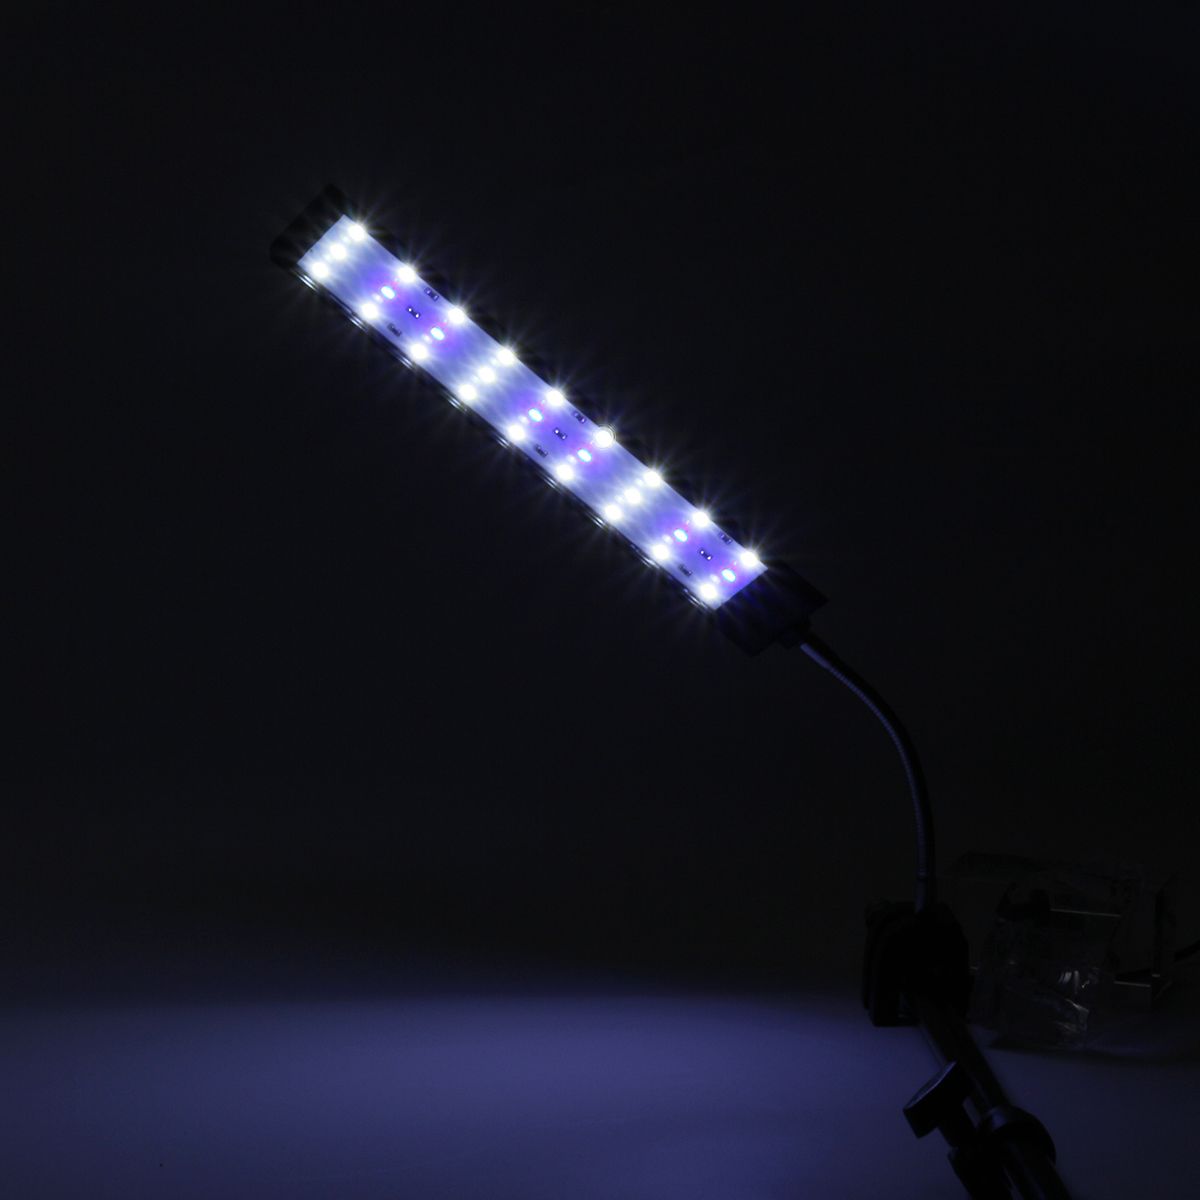 100-240V-10W-Clip-on-LED-Aquarium-Light-Fish-Tank-Decoration-Lighting-Lamp-with-White--Blue-LEDs-Tou-1640561